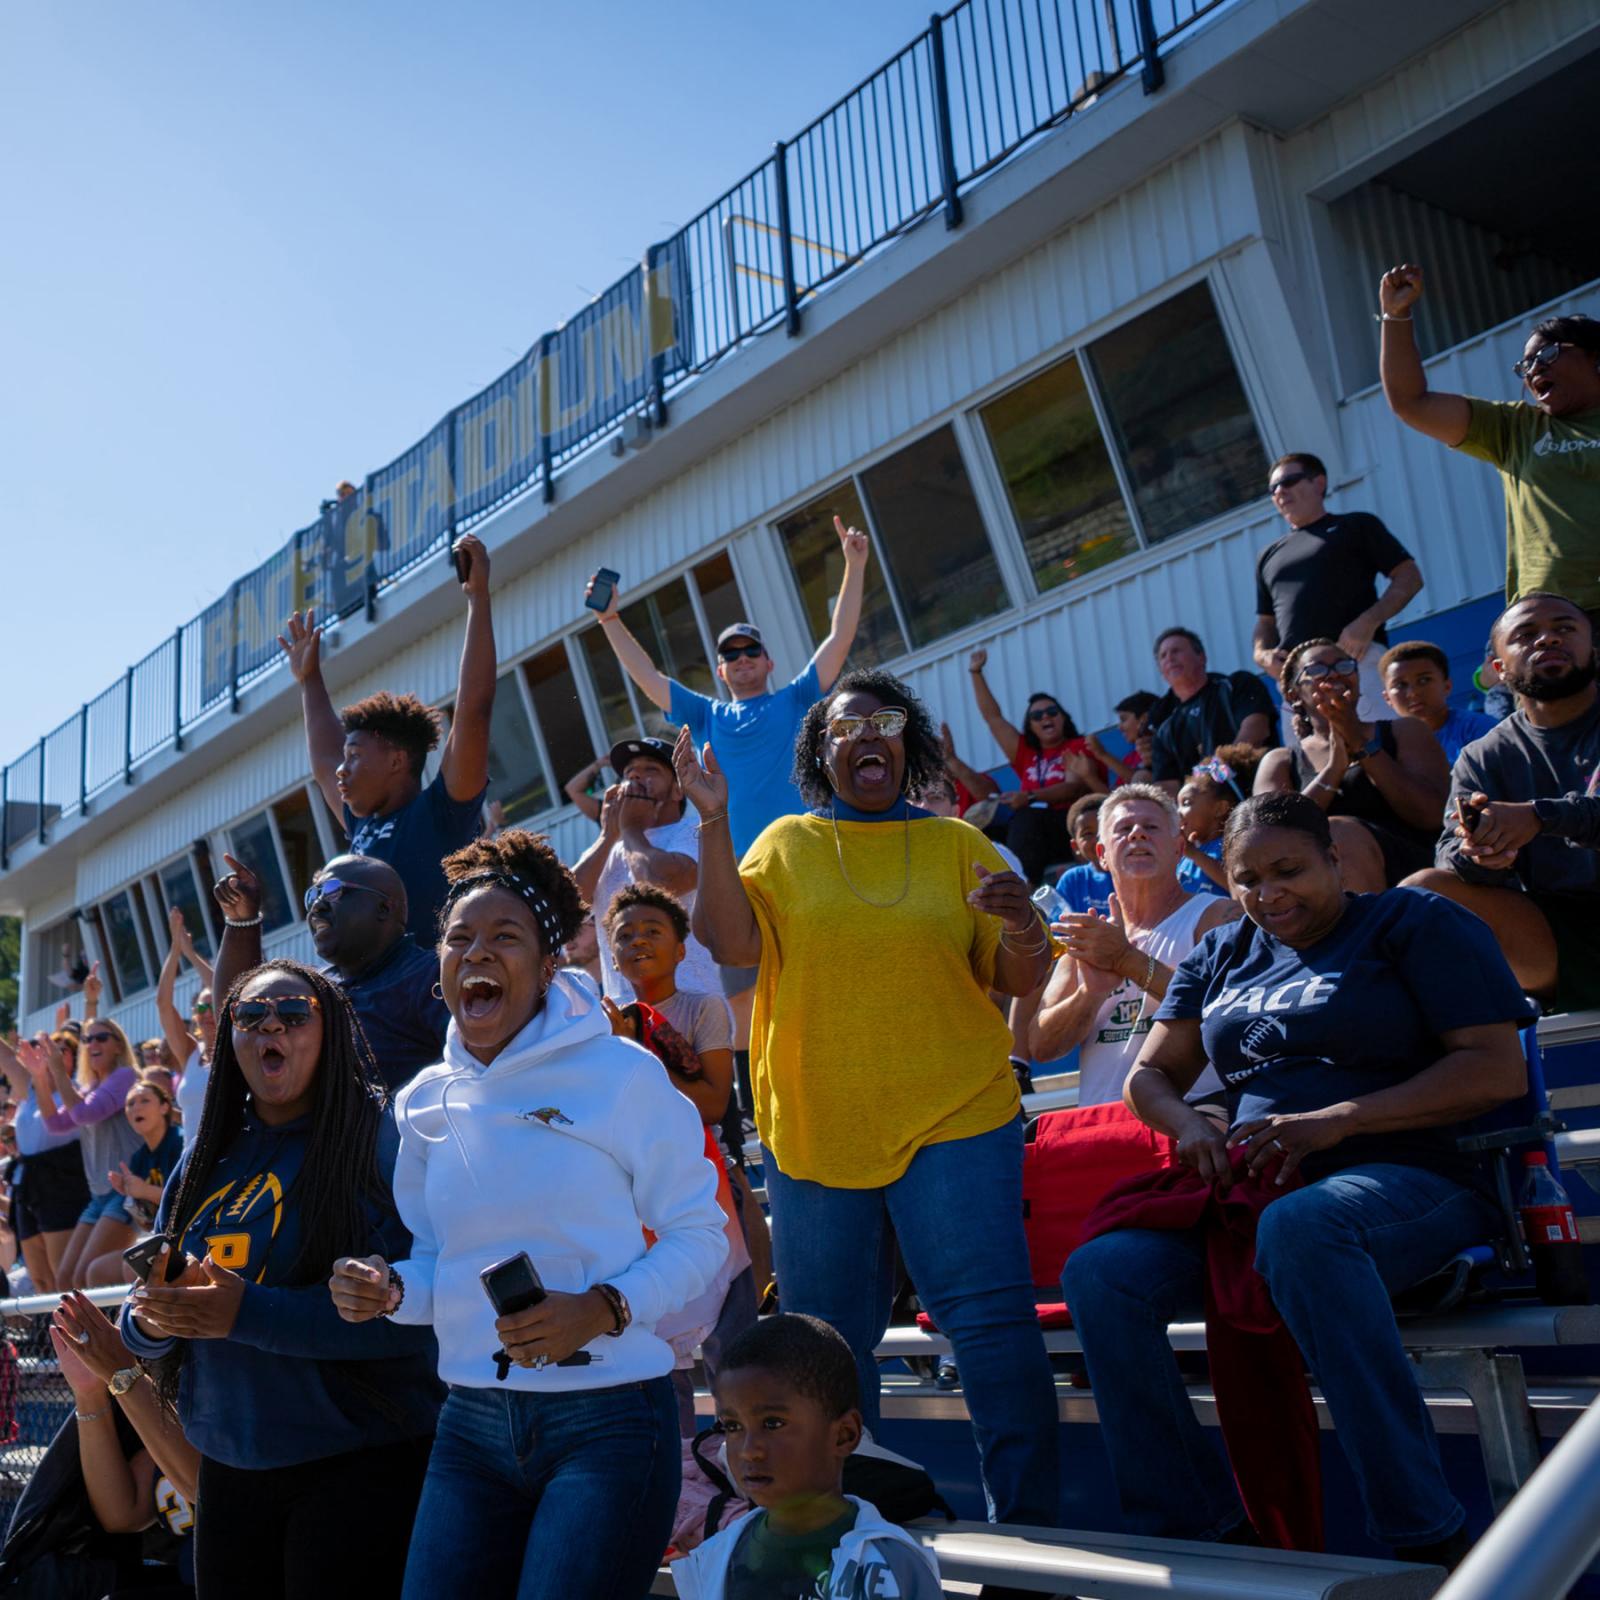 Students cheering at a football game.